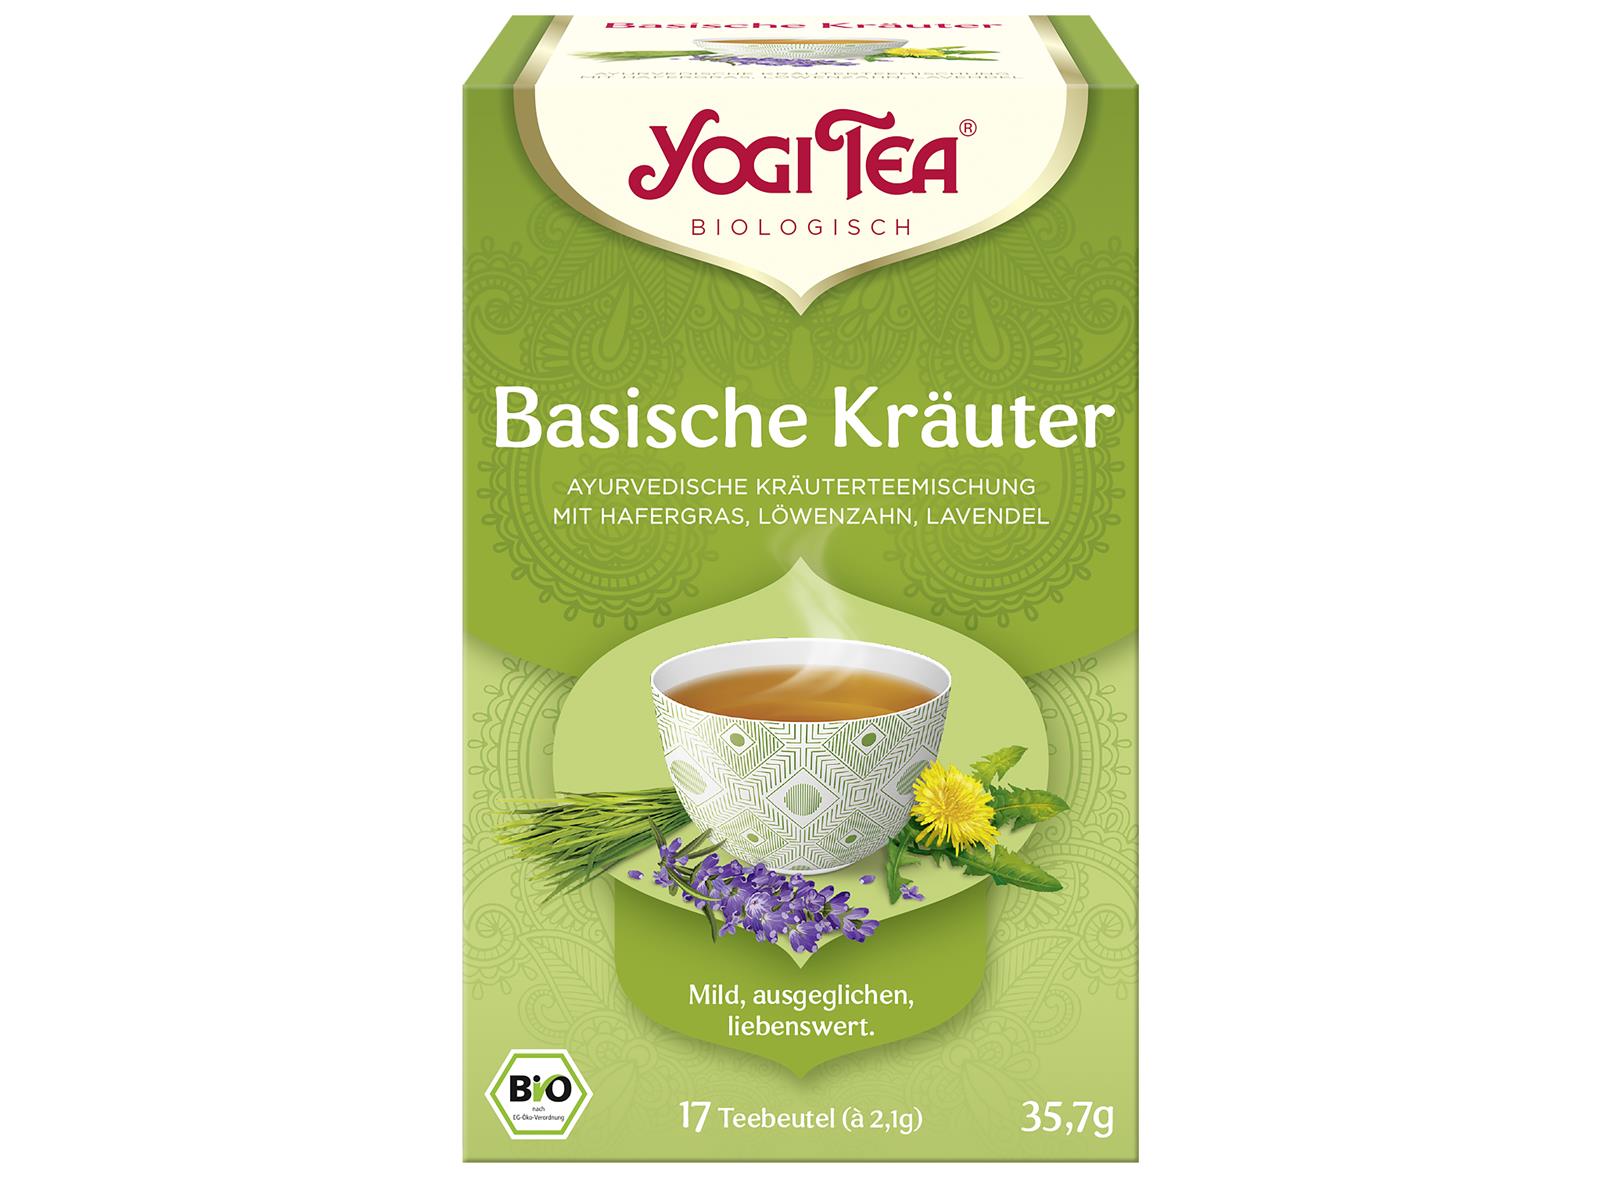 Yogi Tea Basische Kräuter 35,7g